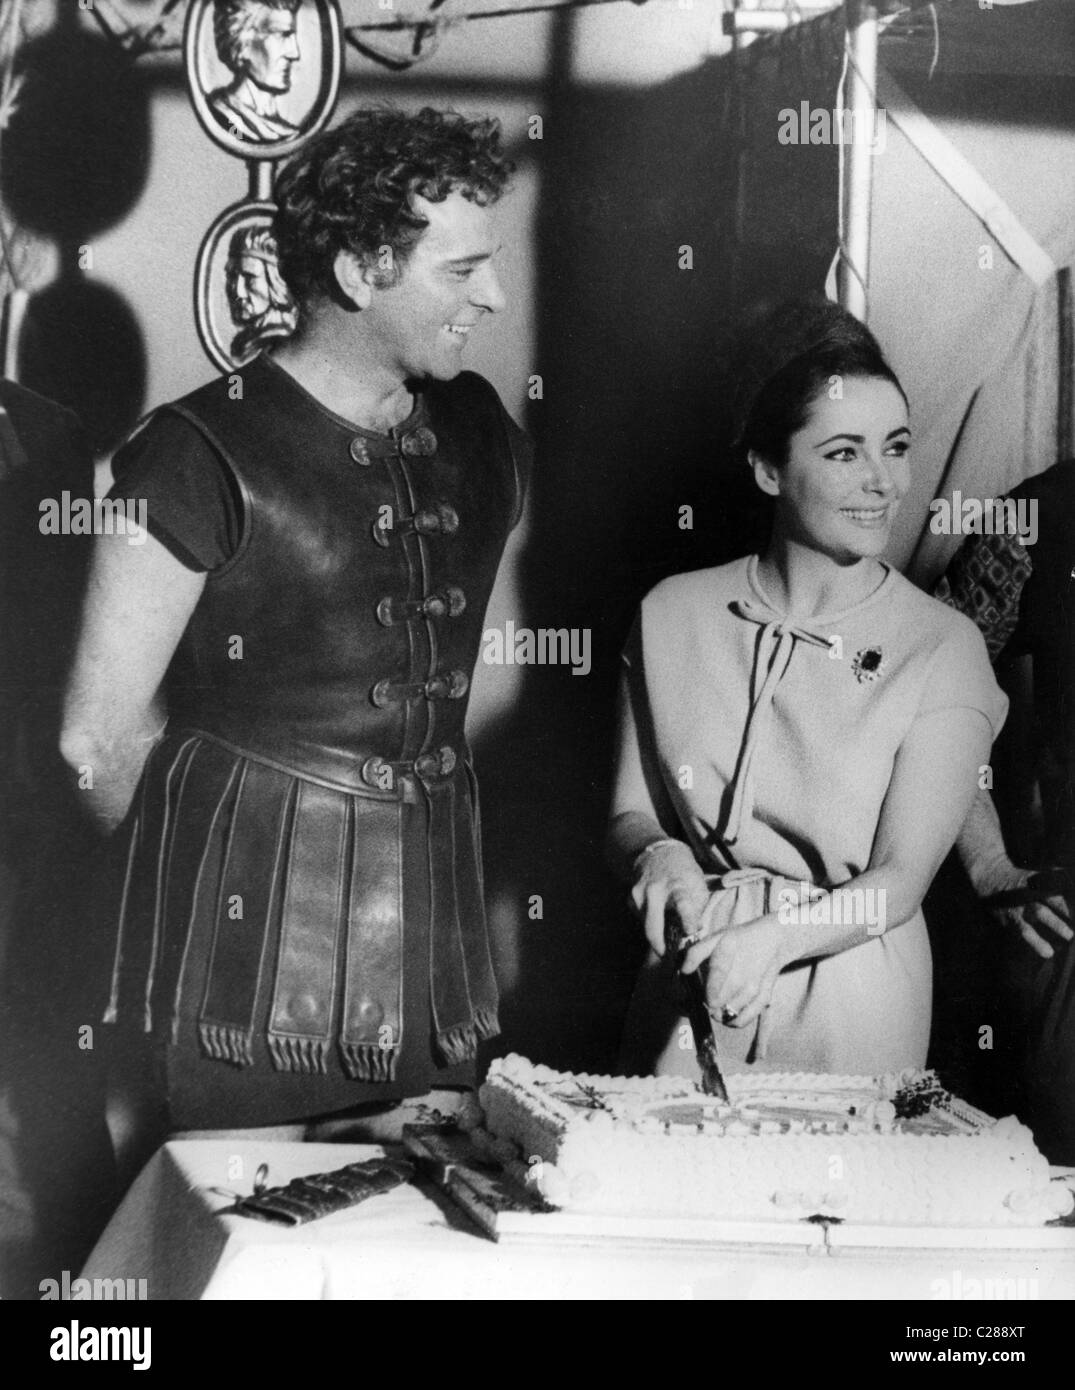 Actress Liz Taylor cuts cake with sword Stock Photo